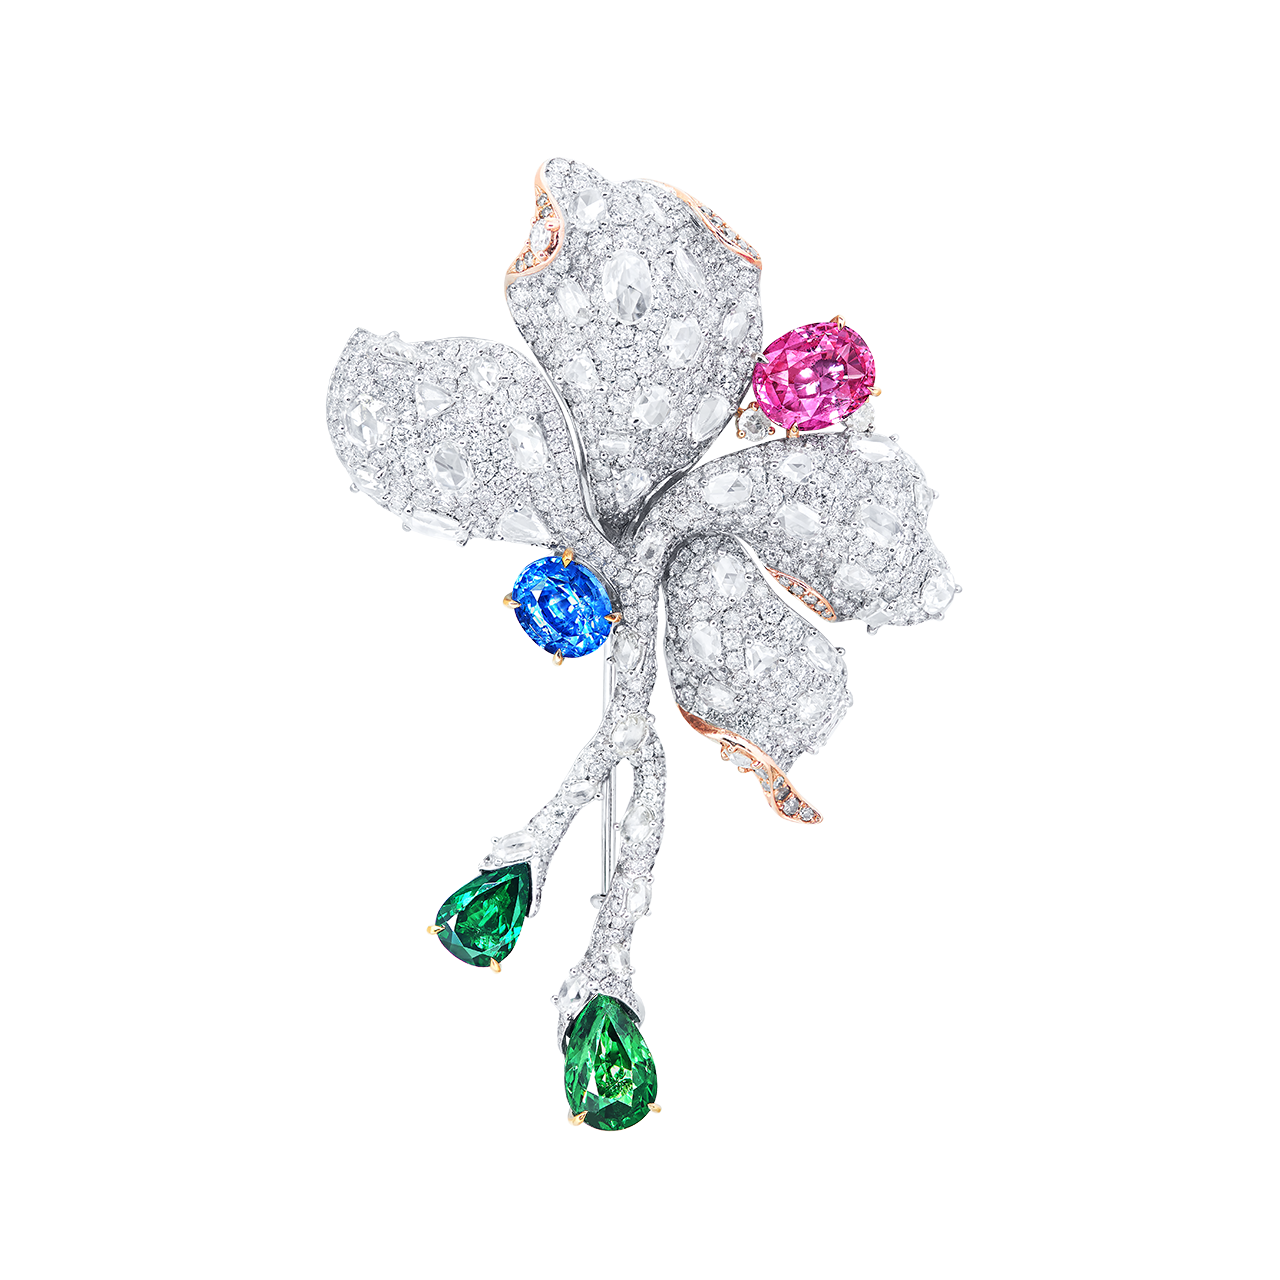 混色彩寶 花造型別針
Multi - Colored Gemstone and 
Diamond Brooch